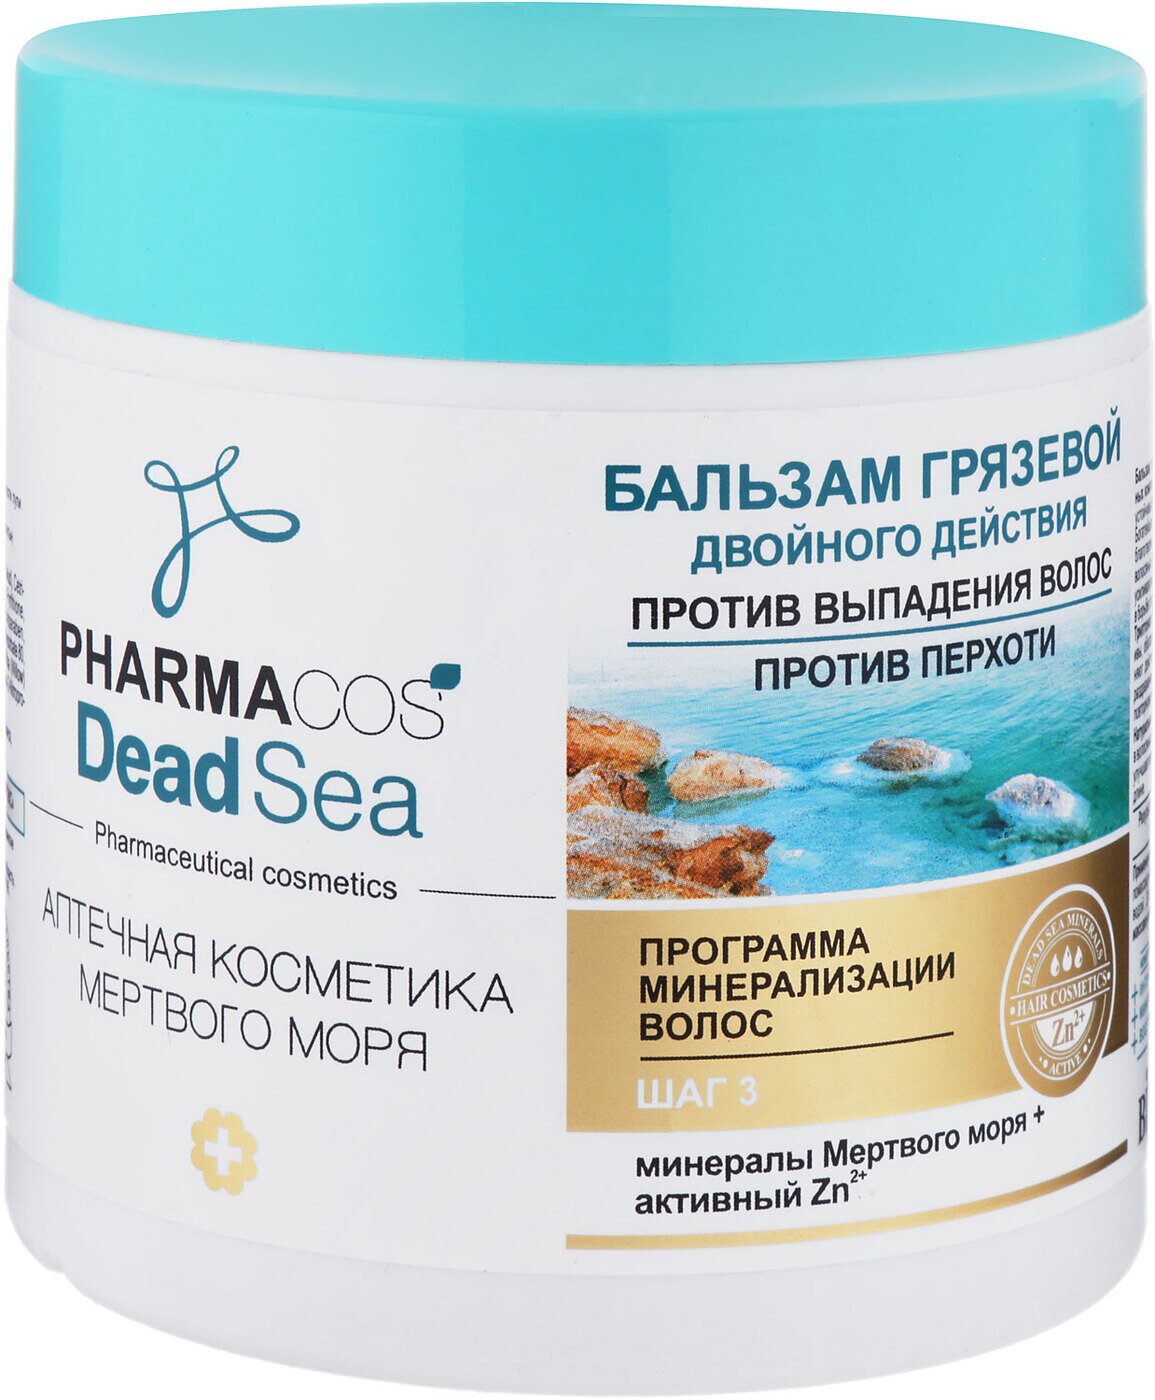 Витэкс Pharmacos Dead Sea